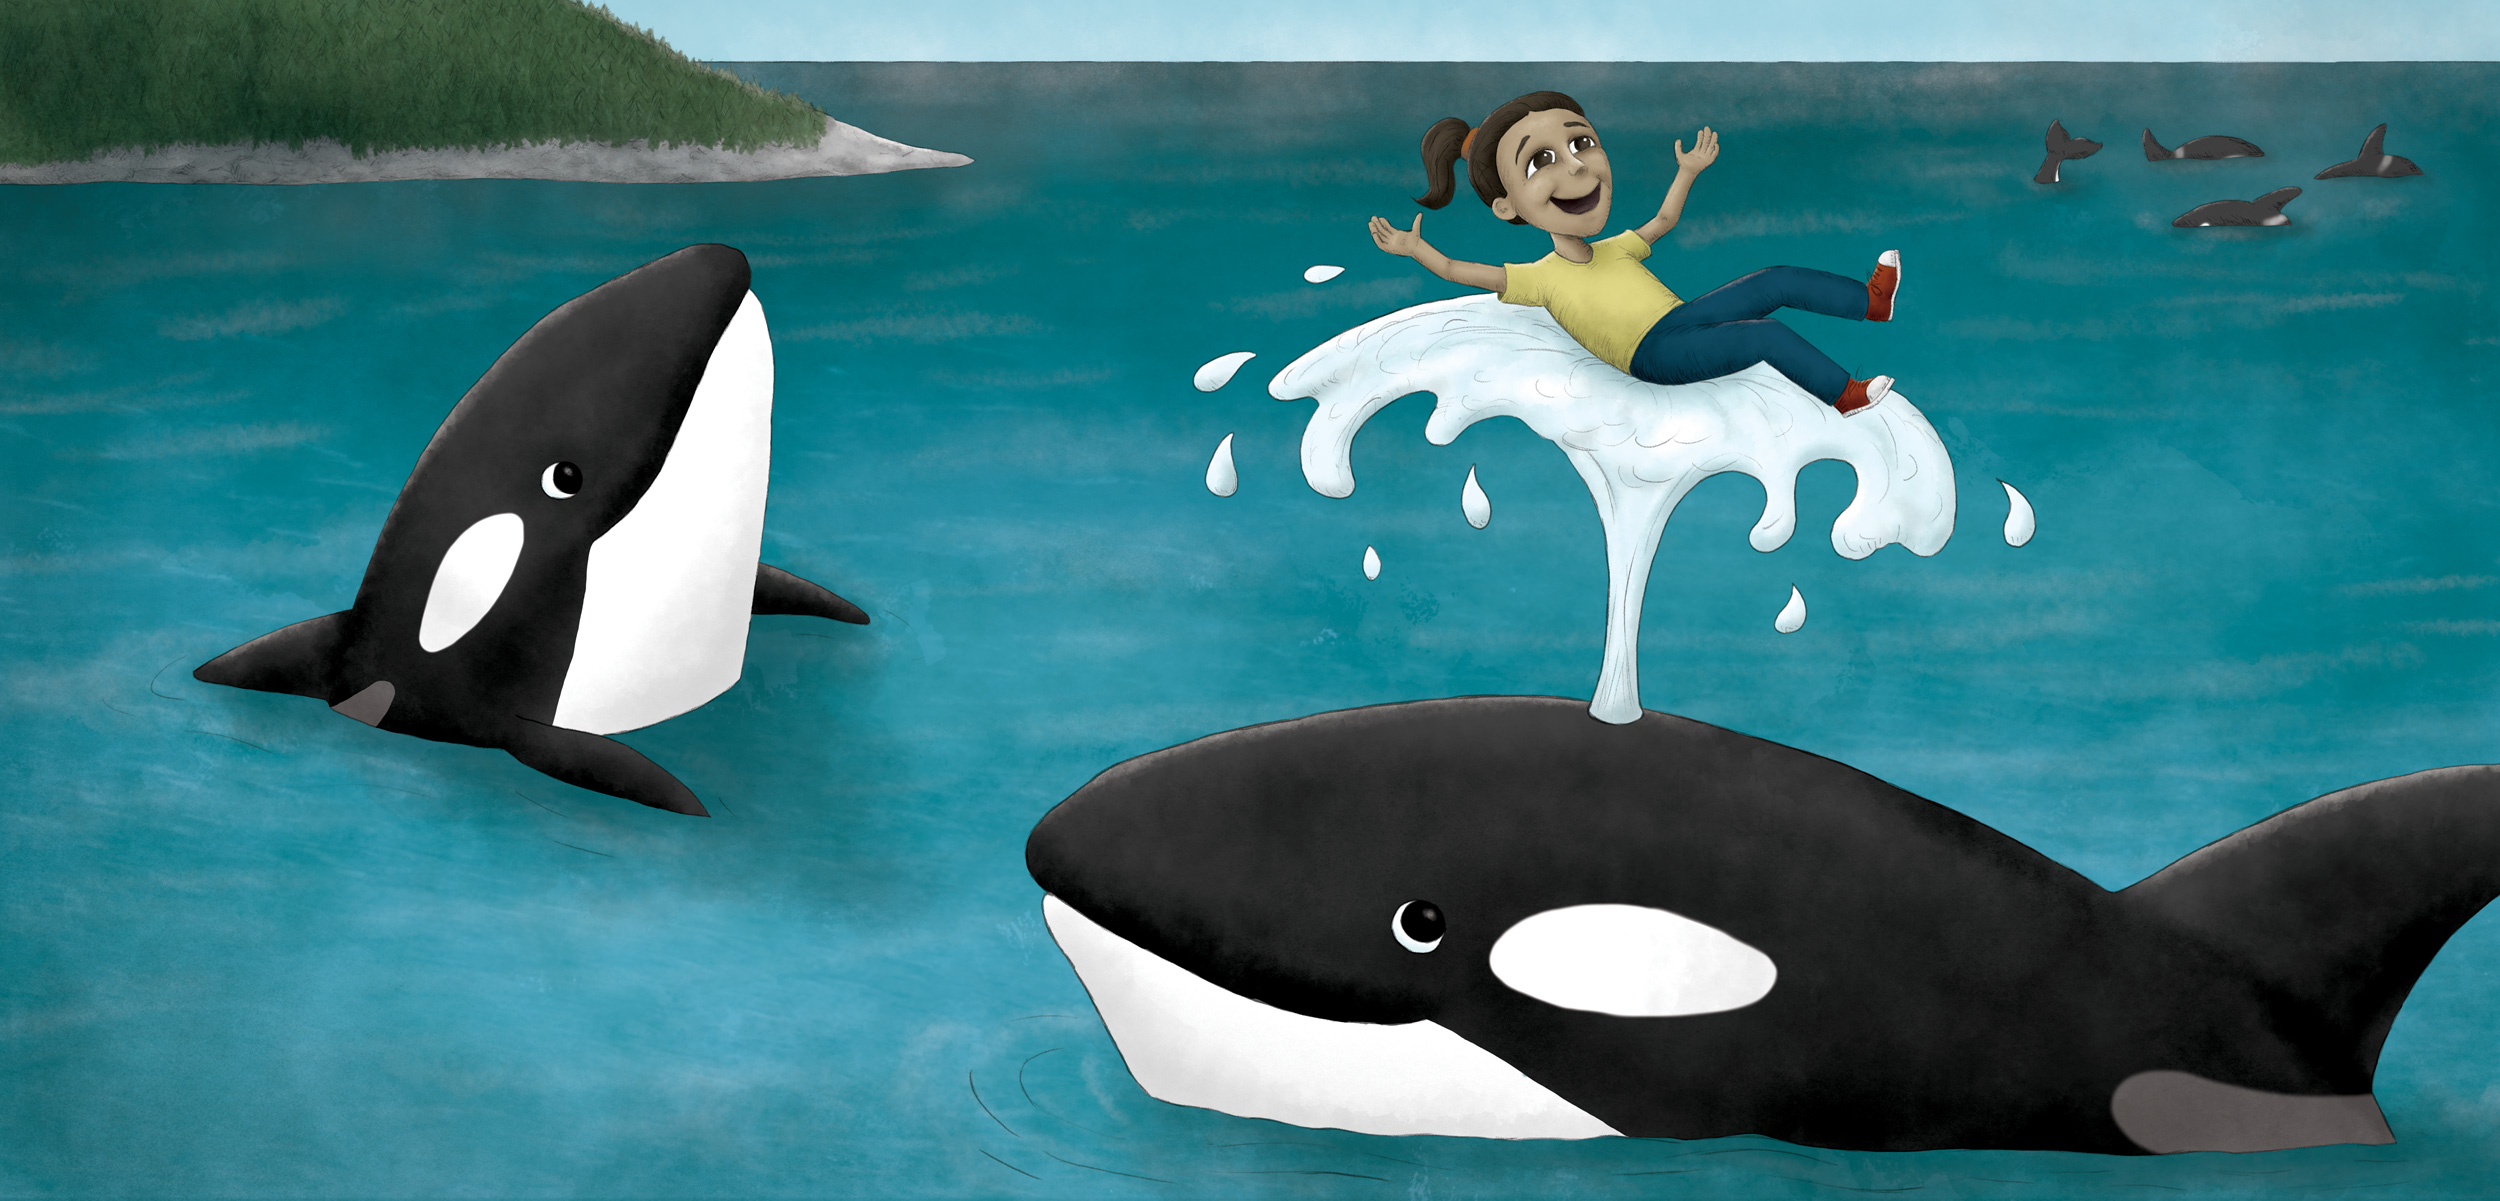 illustration showing a child riding a killer whale's spout